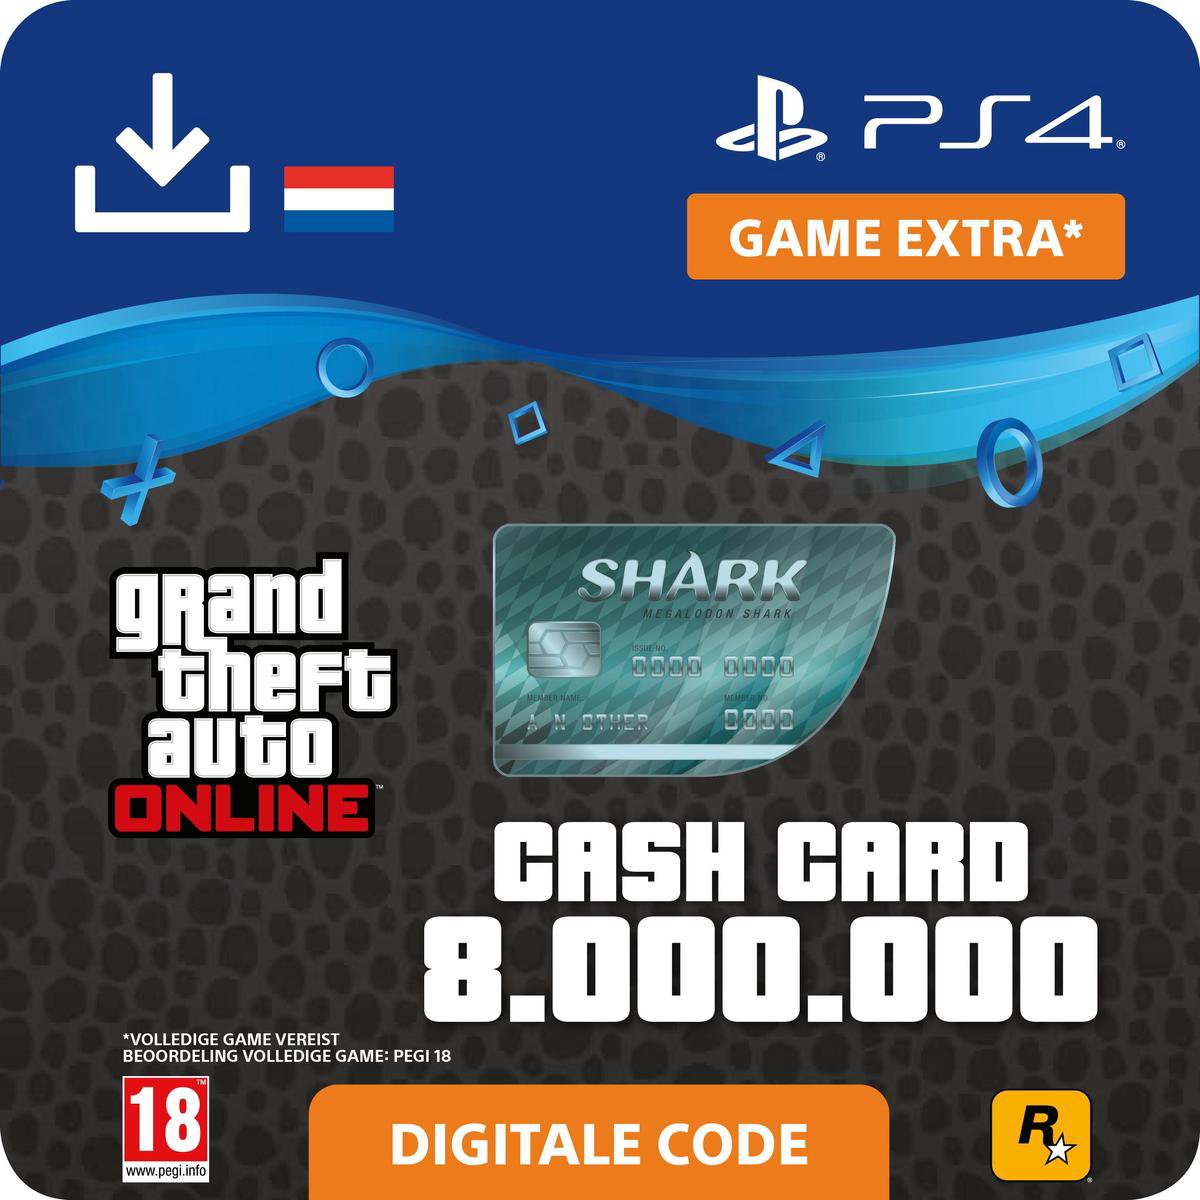 GTA V - digitale valuta - 8.000.000 GTA dollars Megalodon Shark - NL - PS4 download - Sony digitaal